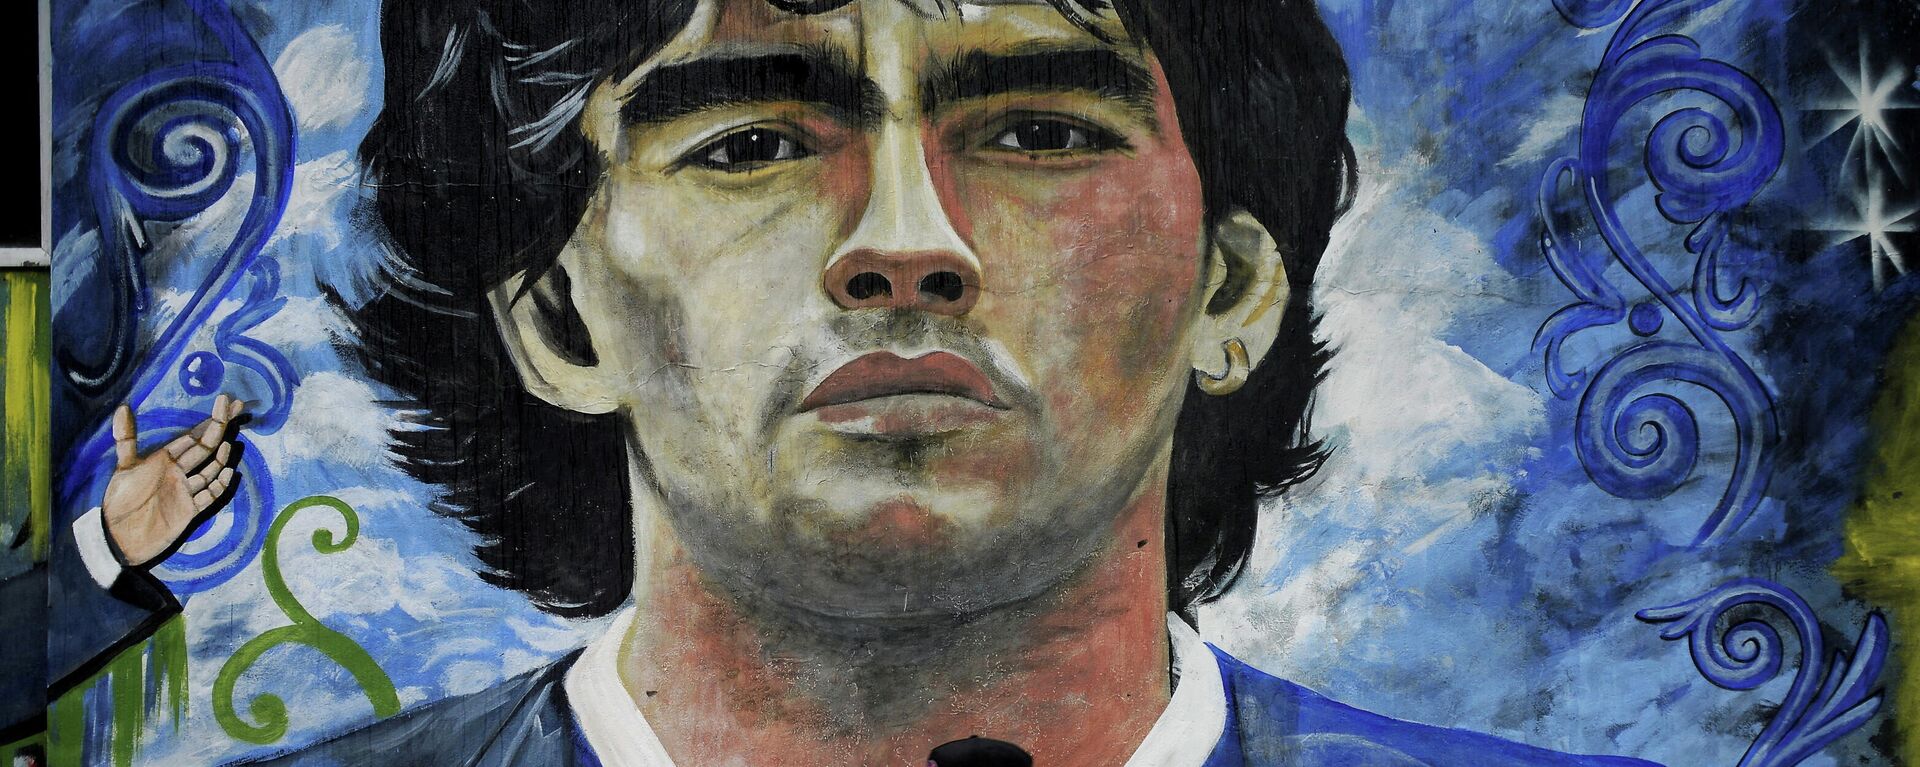 Retrato de Diego Armando Maradona - Sputnik Mundo, 1920, 25.11.2021